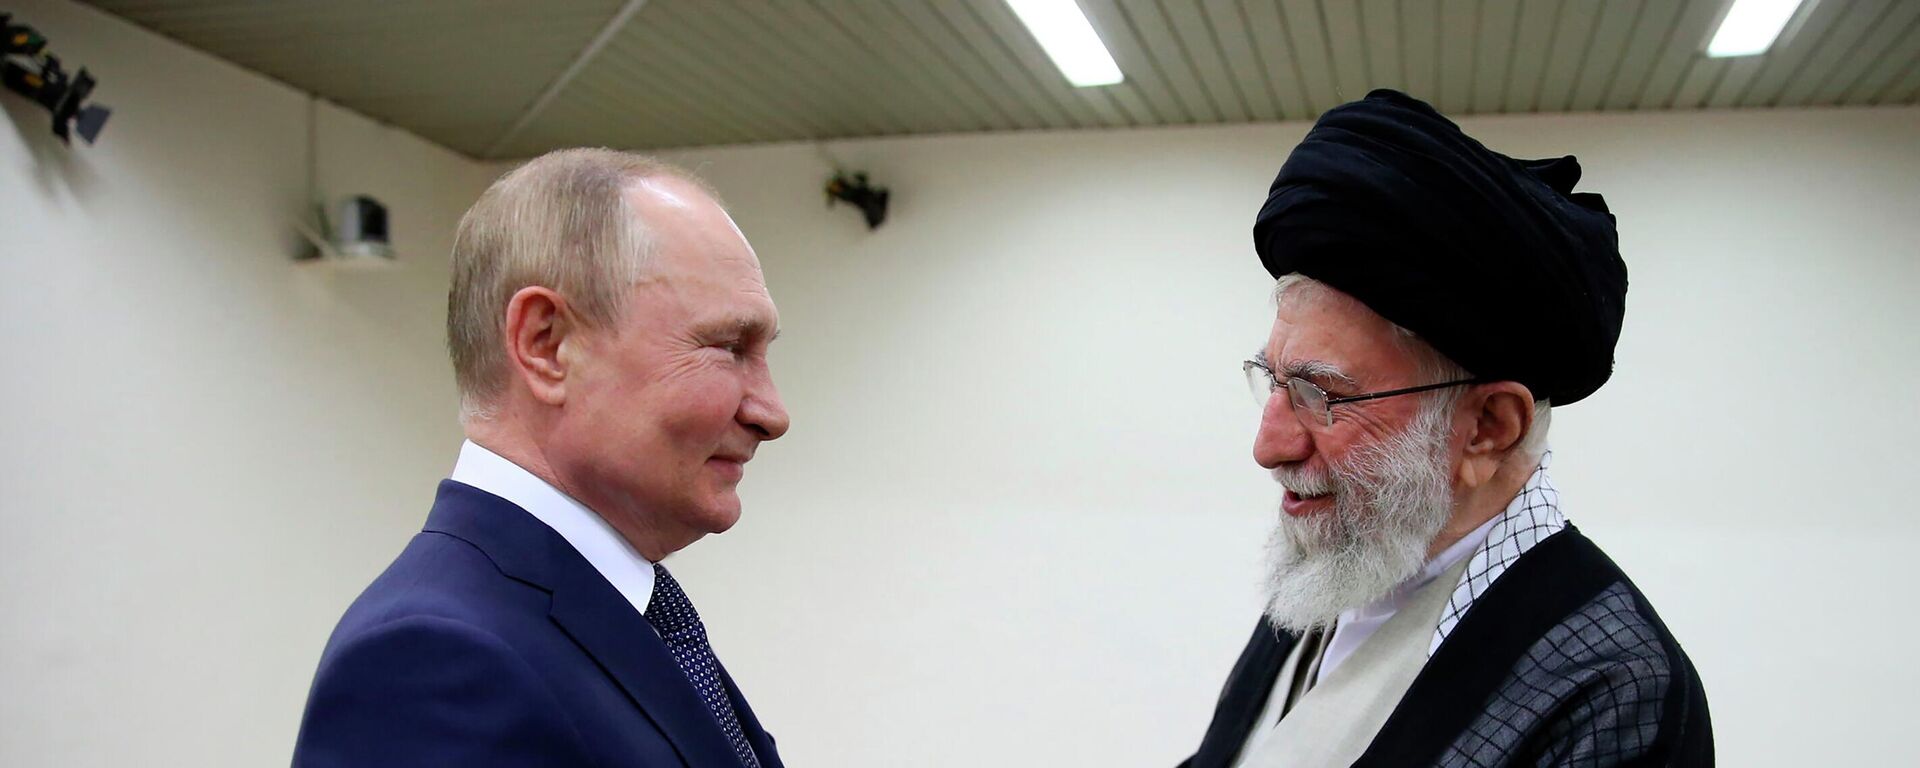 O presidente da Rússia, Vladimir Putin (à esquerda), e o líder supremo iraniano, aiatolá Ali Khamenei (à direita), se cumprimentam durante encontro em Teerã, 19 de julho de 2022 - Sputnik Brasil, 1920, 19.07.2022